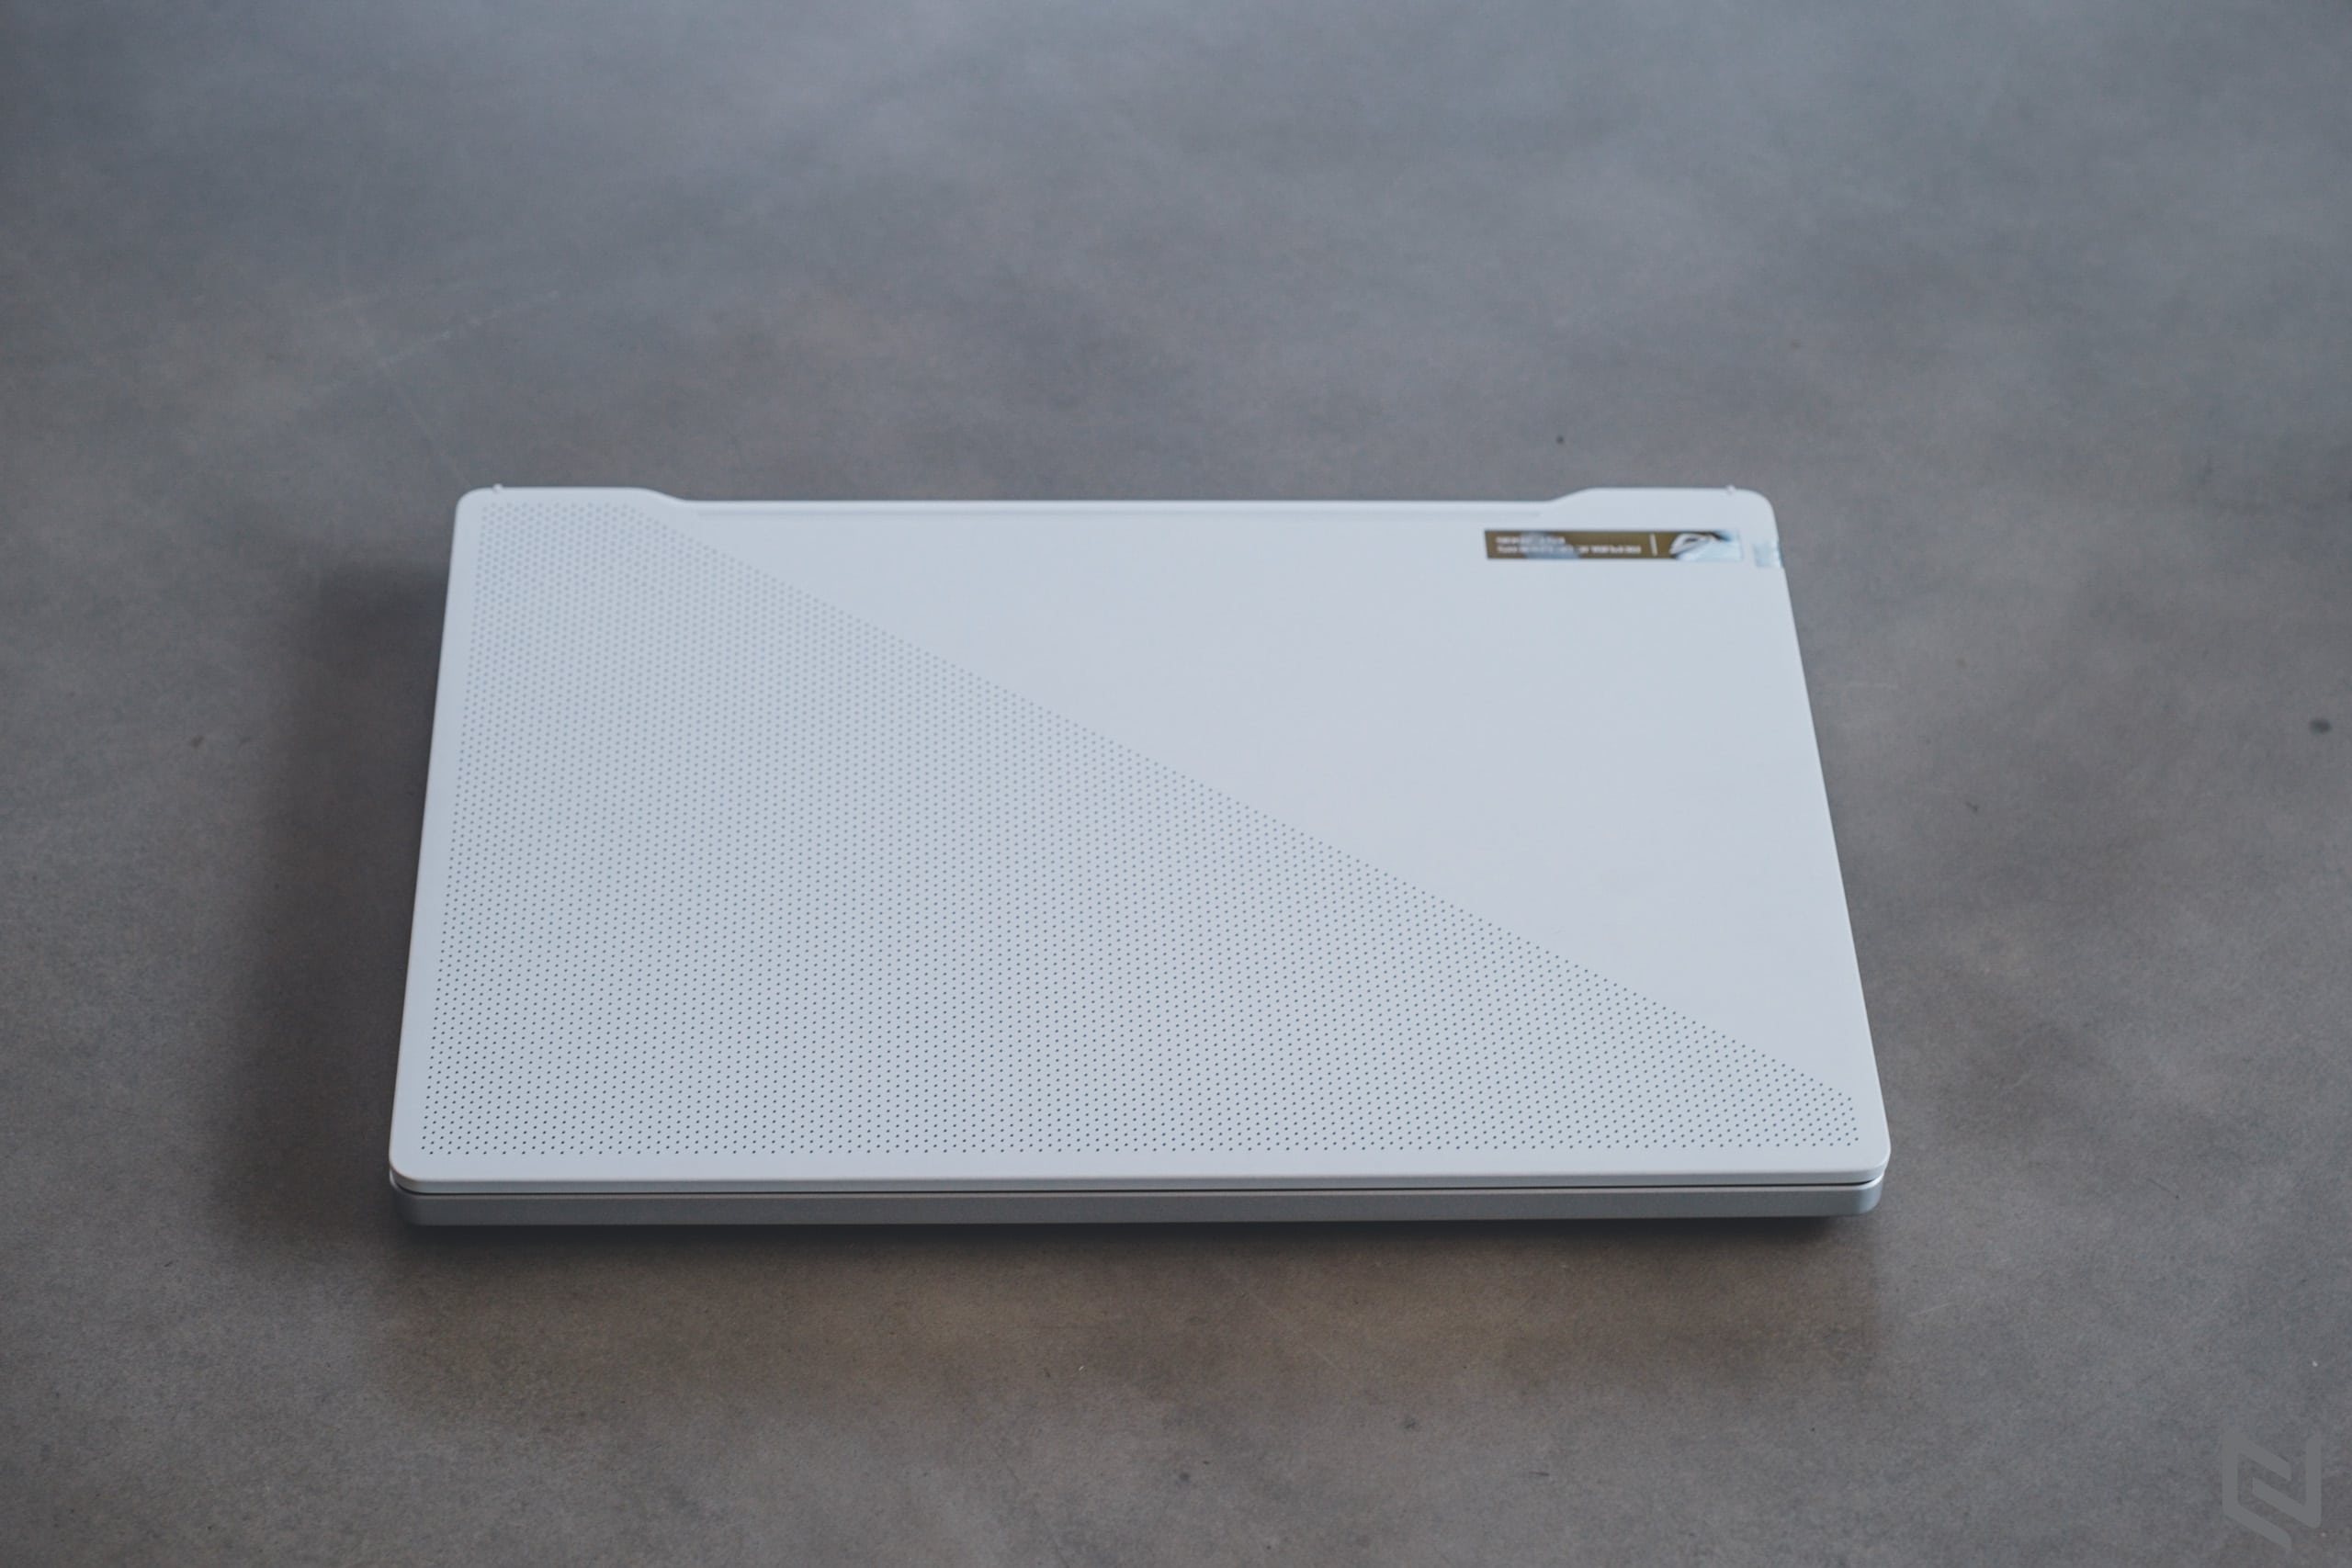 ROG chính thức giới thiệu Zephyrus G14, laptop gaming 14-inch mạnh nhất thế giới